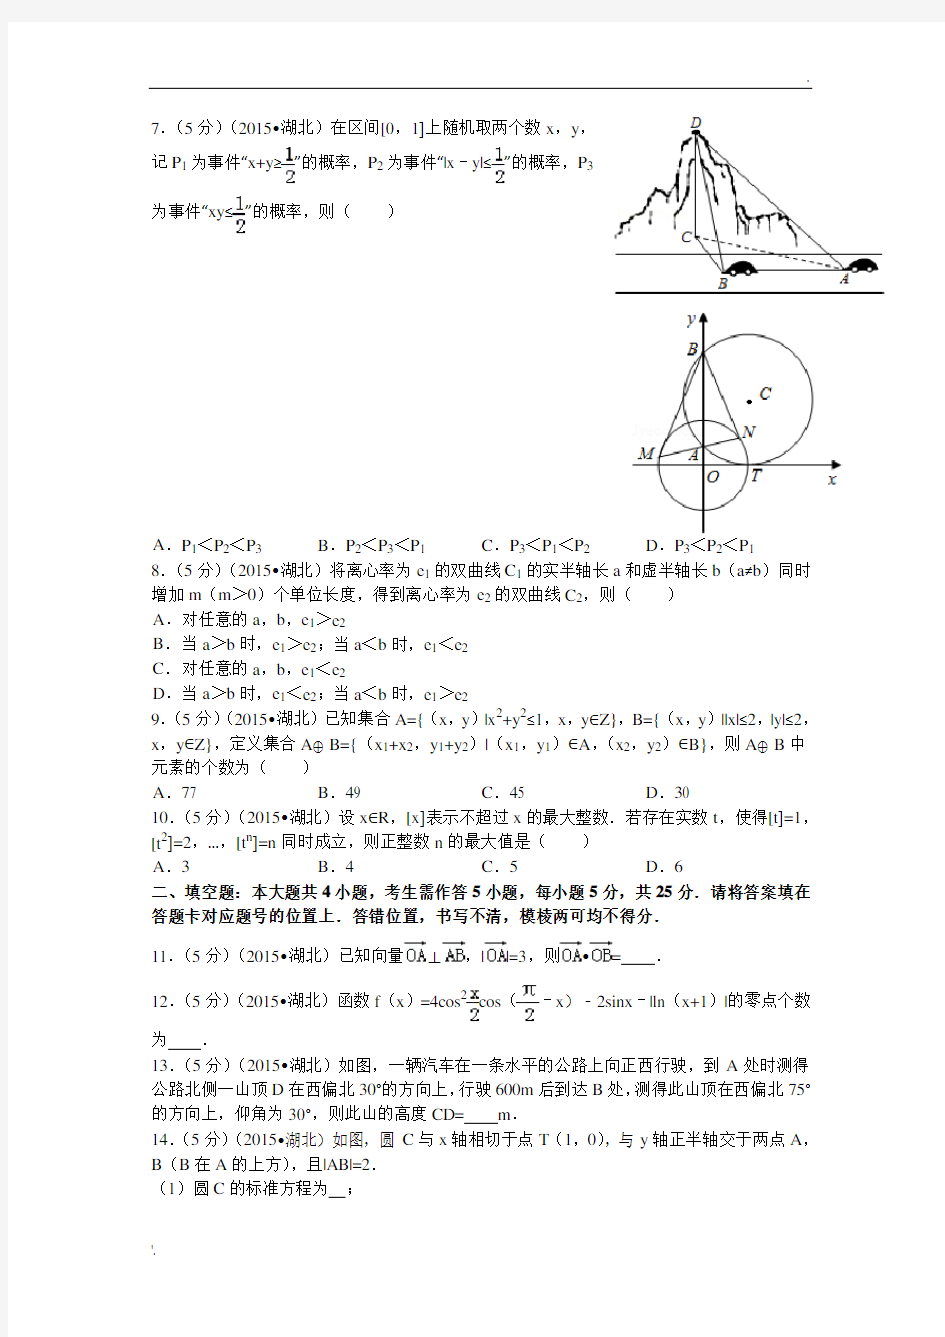 2015年湖北省高考数学试卷(理科)答案与解析